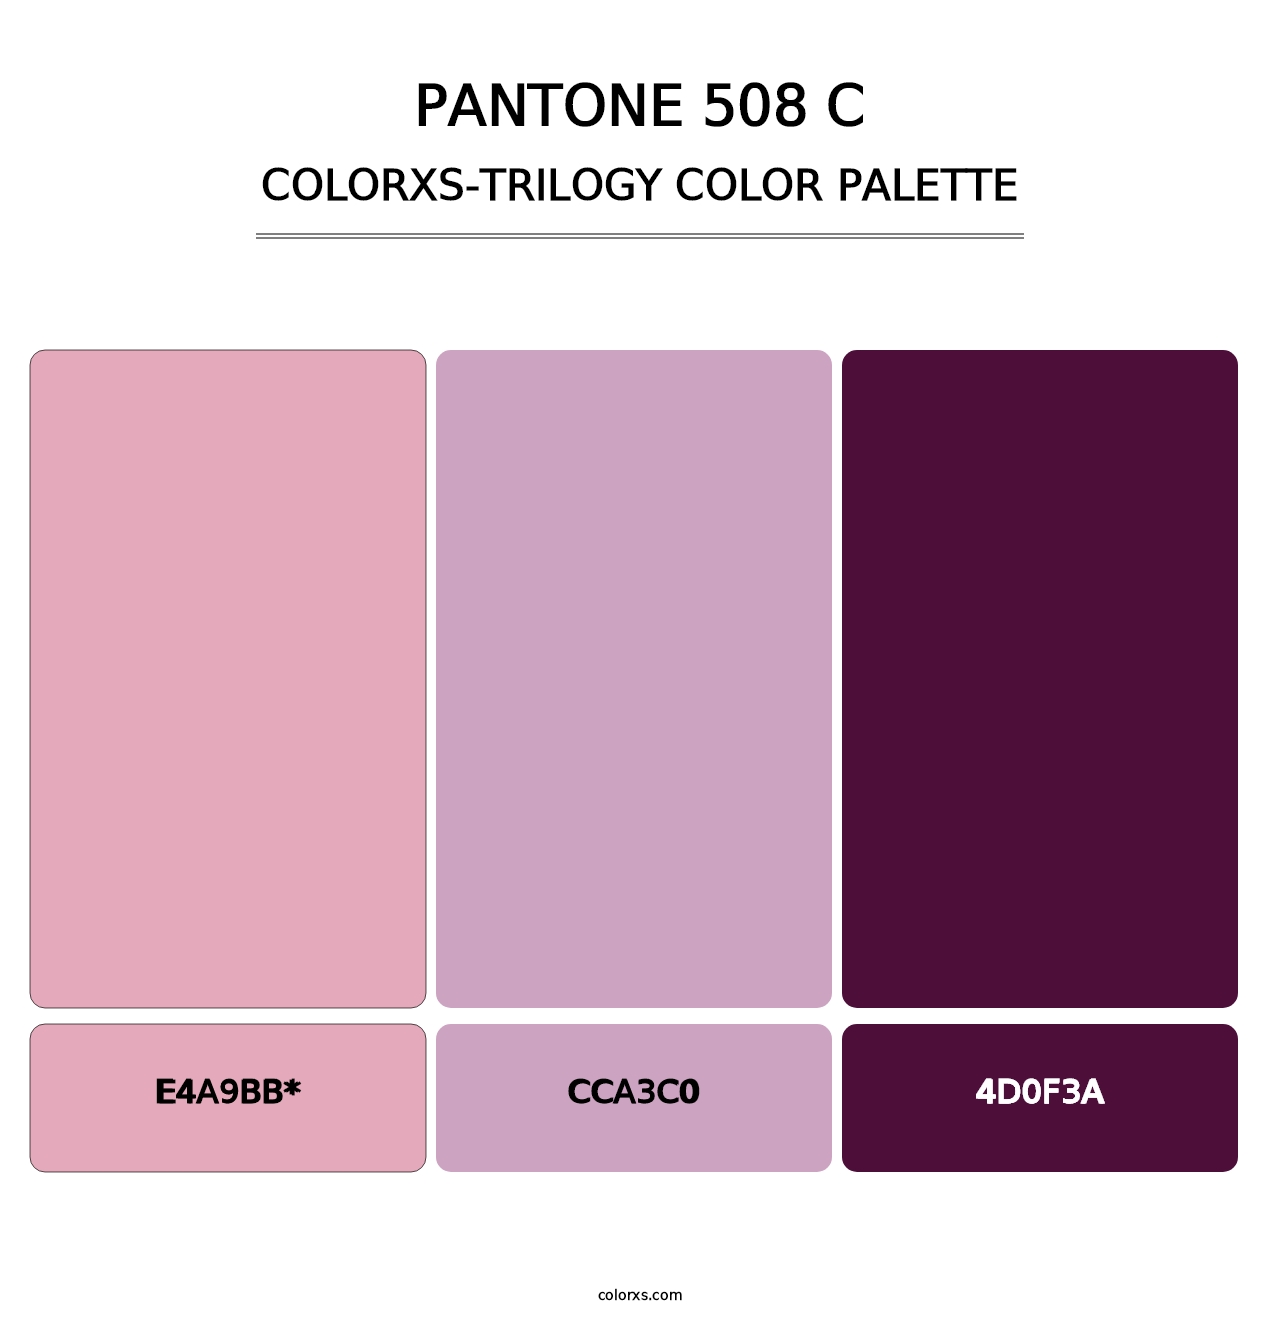 PANTONE 508 C - Colorxs Trilogy Palette